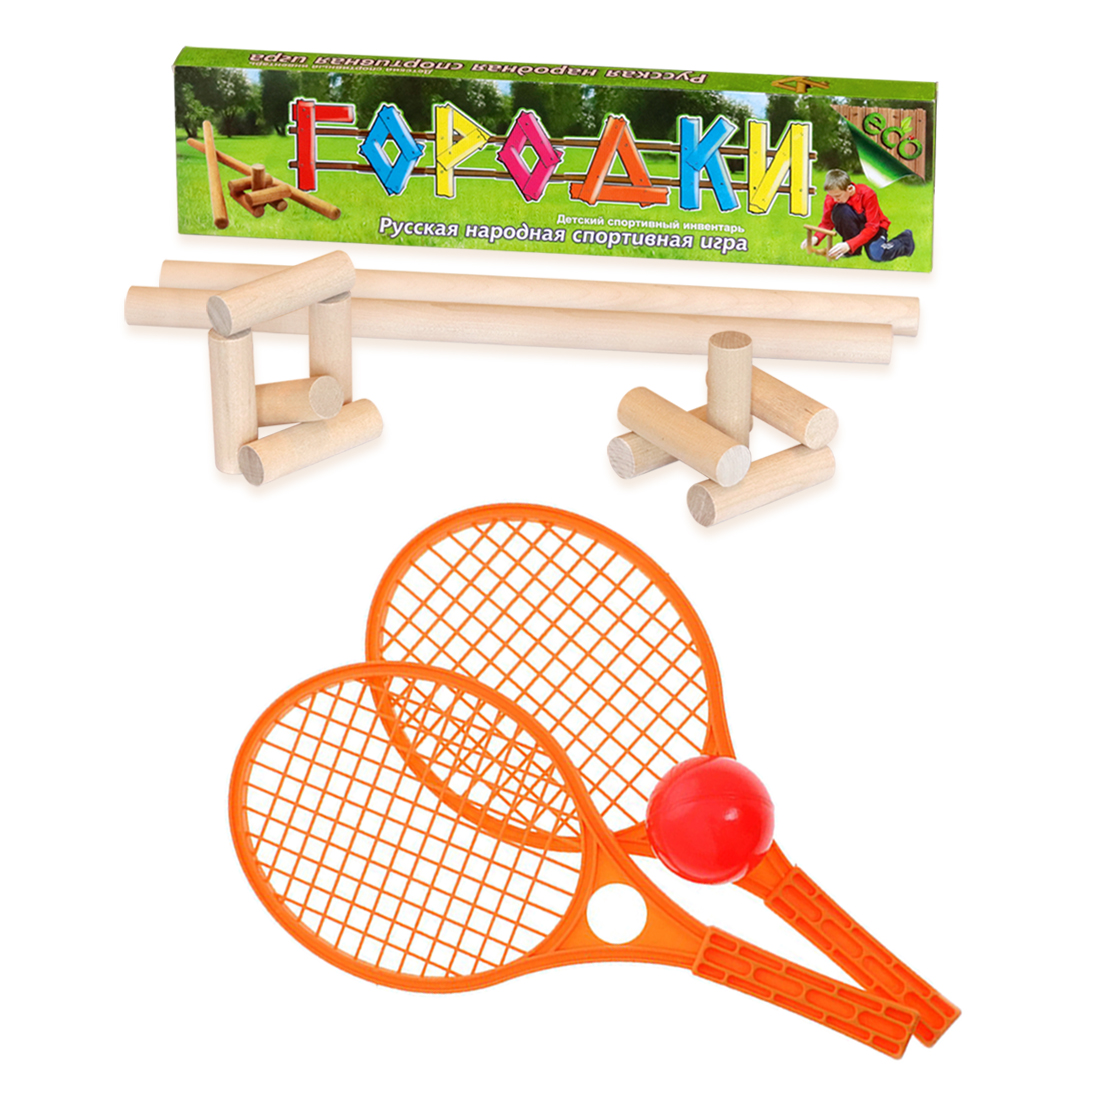 Городки ТЕБЕ ИГРУШКА + Набор для тенниса оранжевый ракетки для большого тенниса babolat b fly gr000 140243 бело розово синий